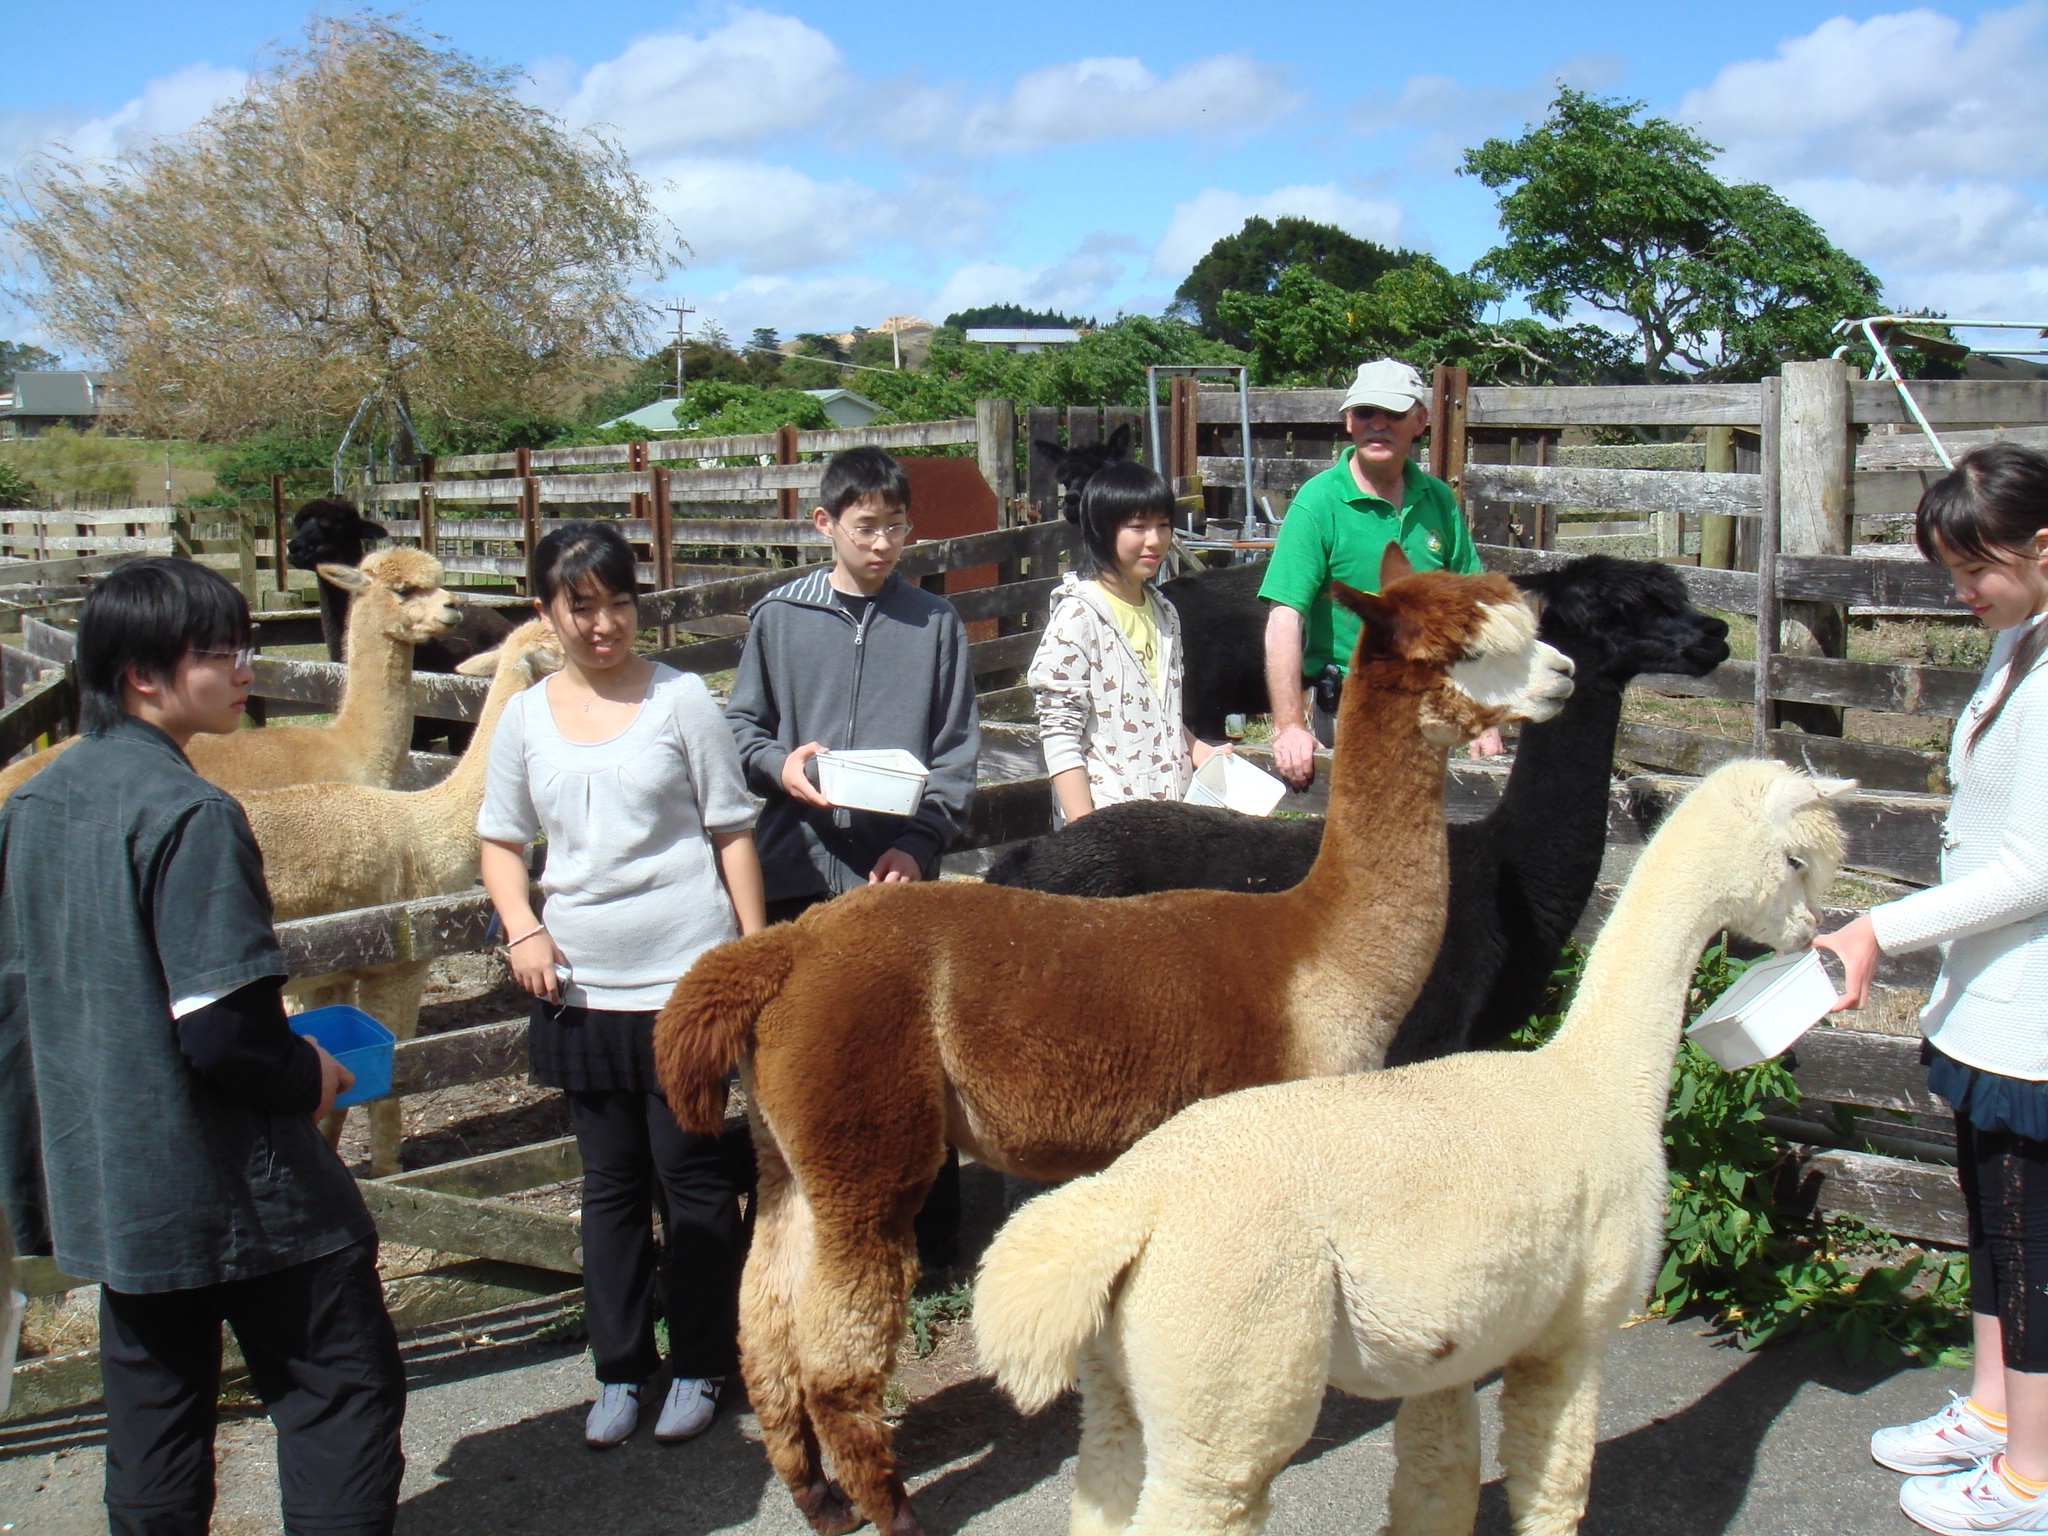 アルパカ ラマに似た動物 は ここnew Zealandでも とても高価な動物とのことで これだけいる牧場も珍しいとのことでした